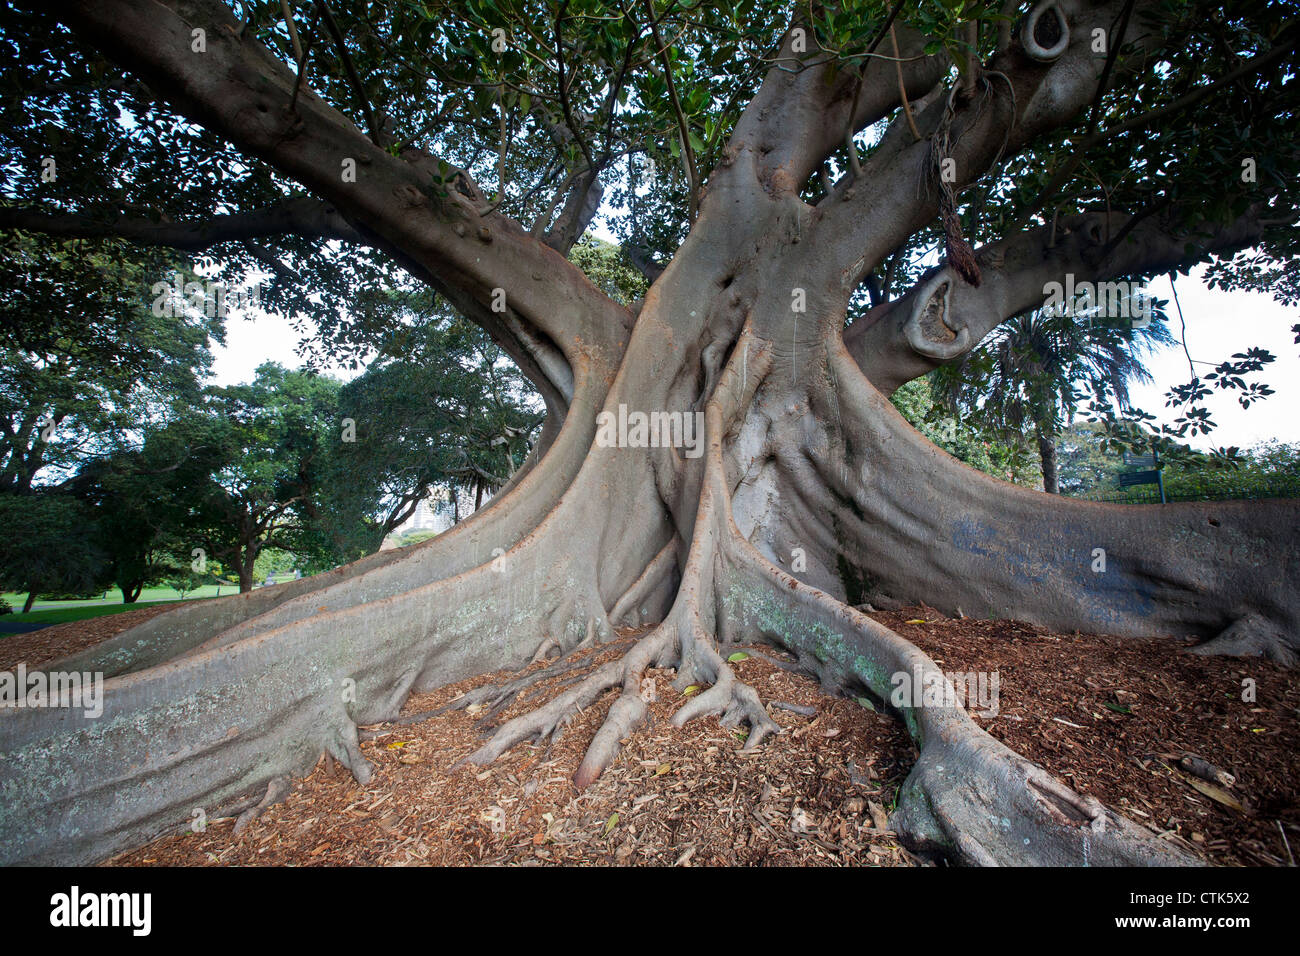 Moreton Bay Fig tree in Sydney's Royal Botanic Gardens Stock Photo